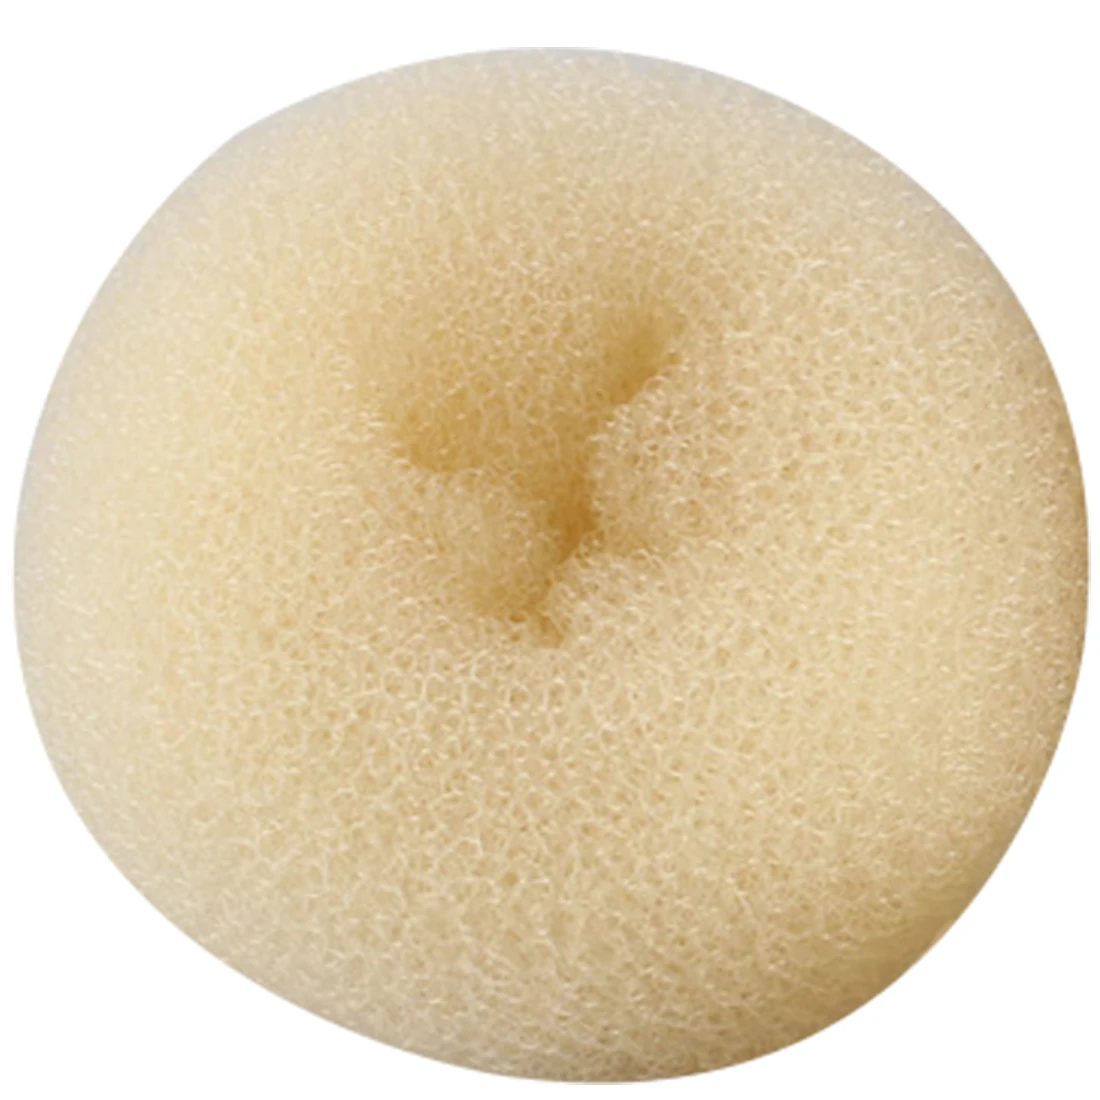 4 размера(6 см, 7-8 см, 9 см, 10-11 см) корейский стиль головка бутона шариковая головка диск пончики блюдо парикмахерские инструменты для женщин доступ к волосам - Цвет: Бежевый